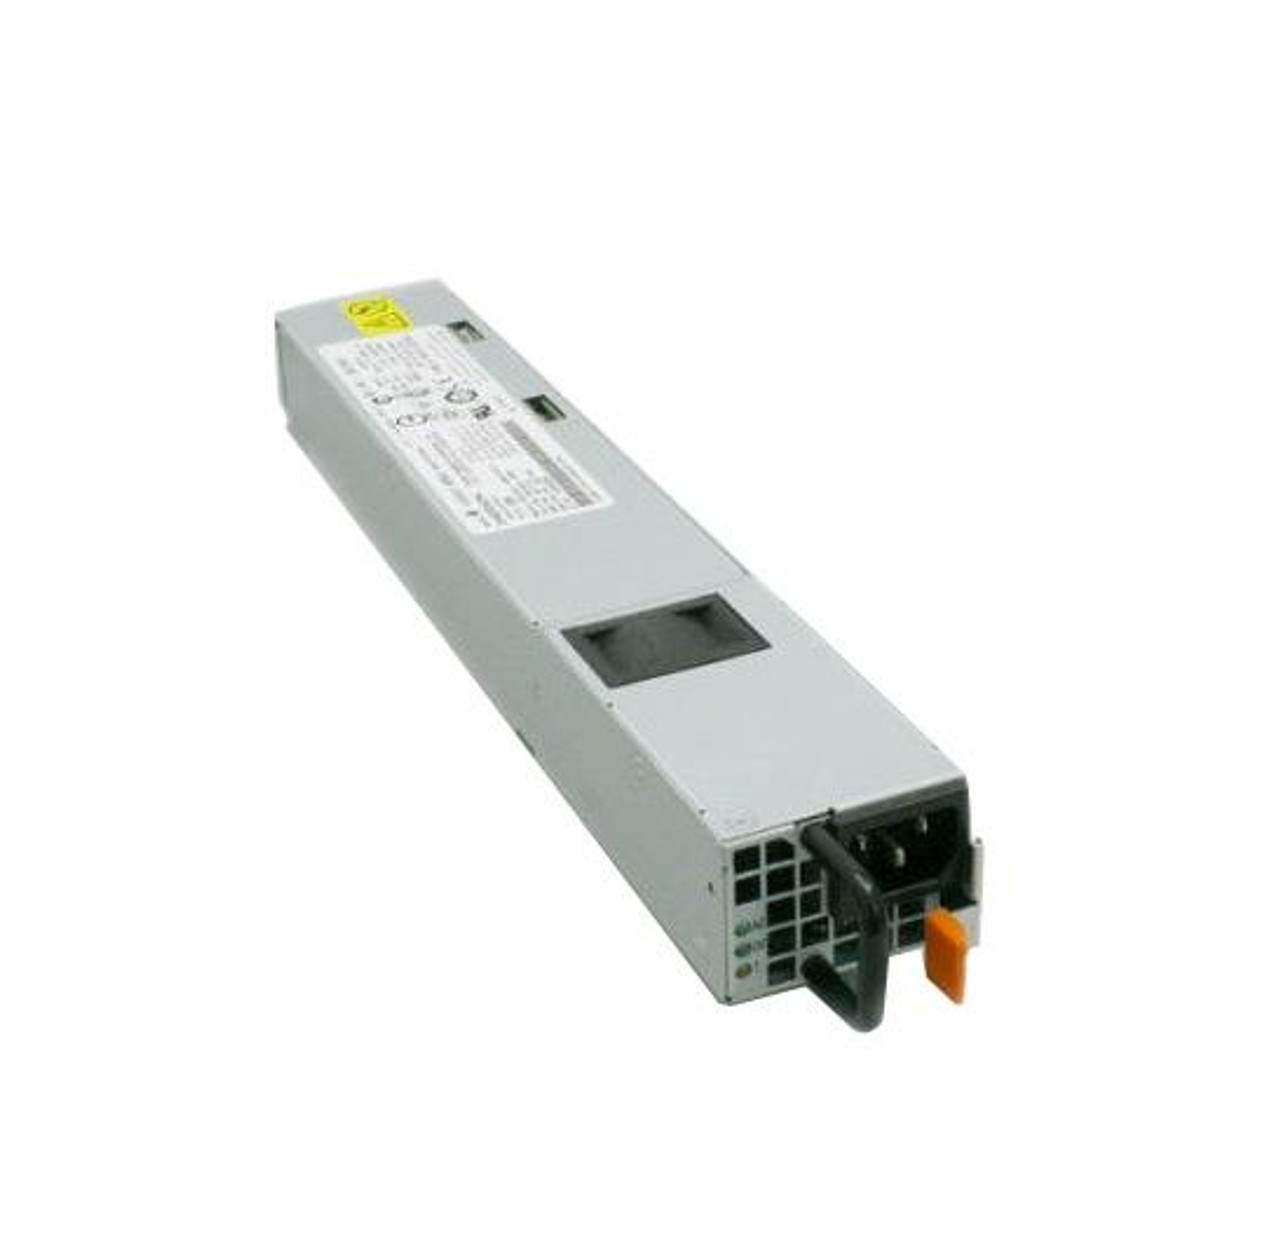 AIR-PSU1-770W= Cisco 770-Watt AC Hot Plug Power Supply for 5520 Controller (Refurbished)